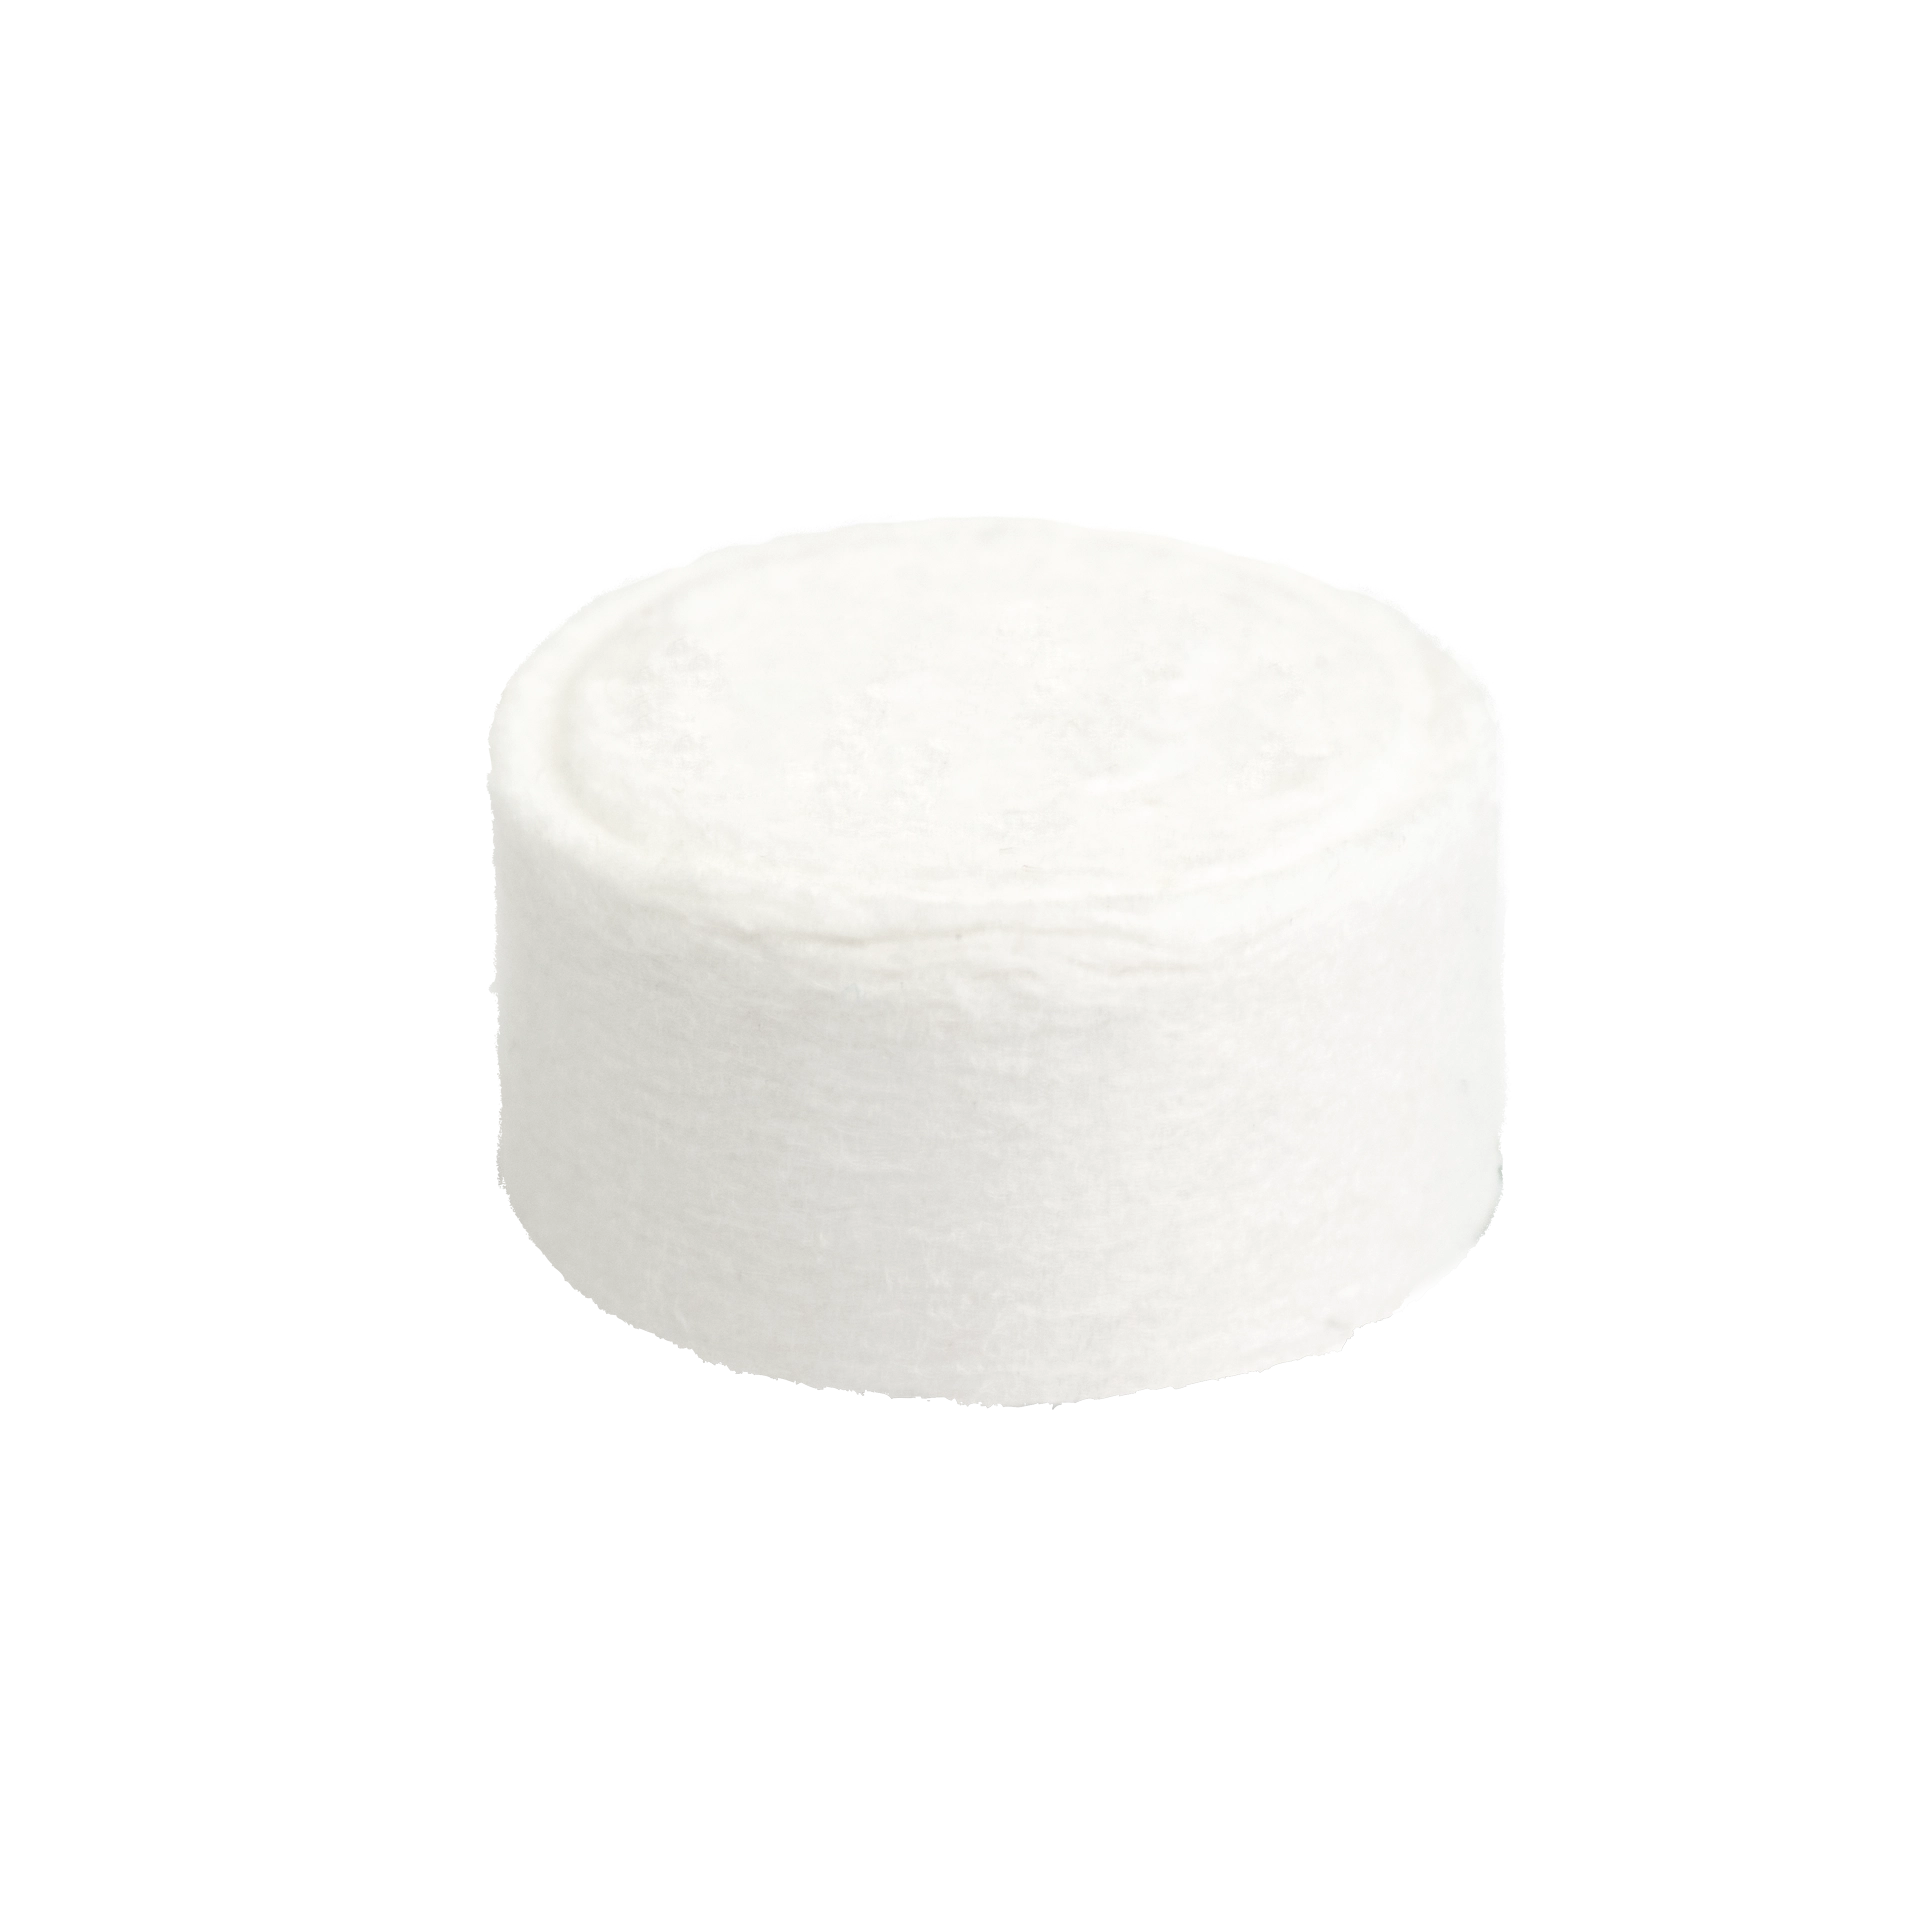 Erfrischungstuch | Napkin Viskose | weiß 24x25 cm 